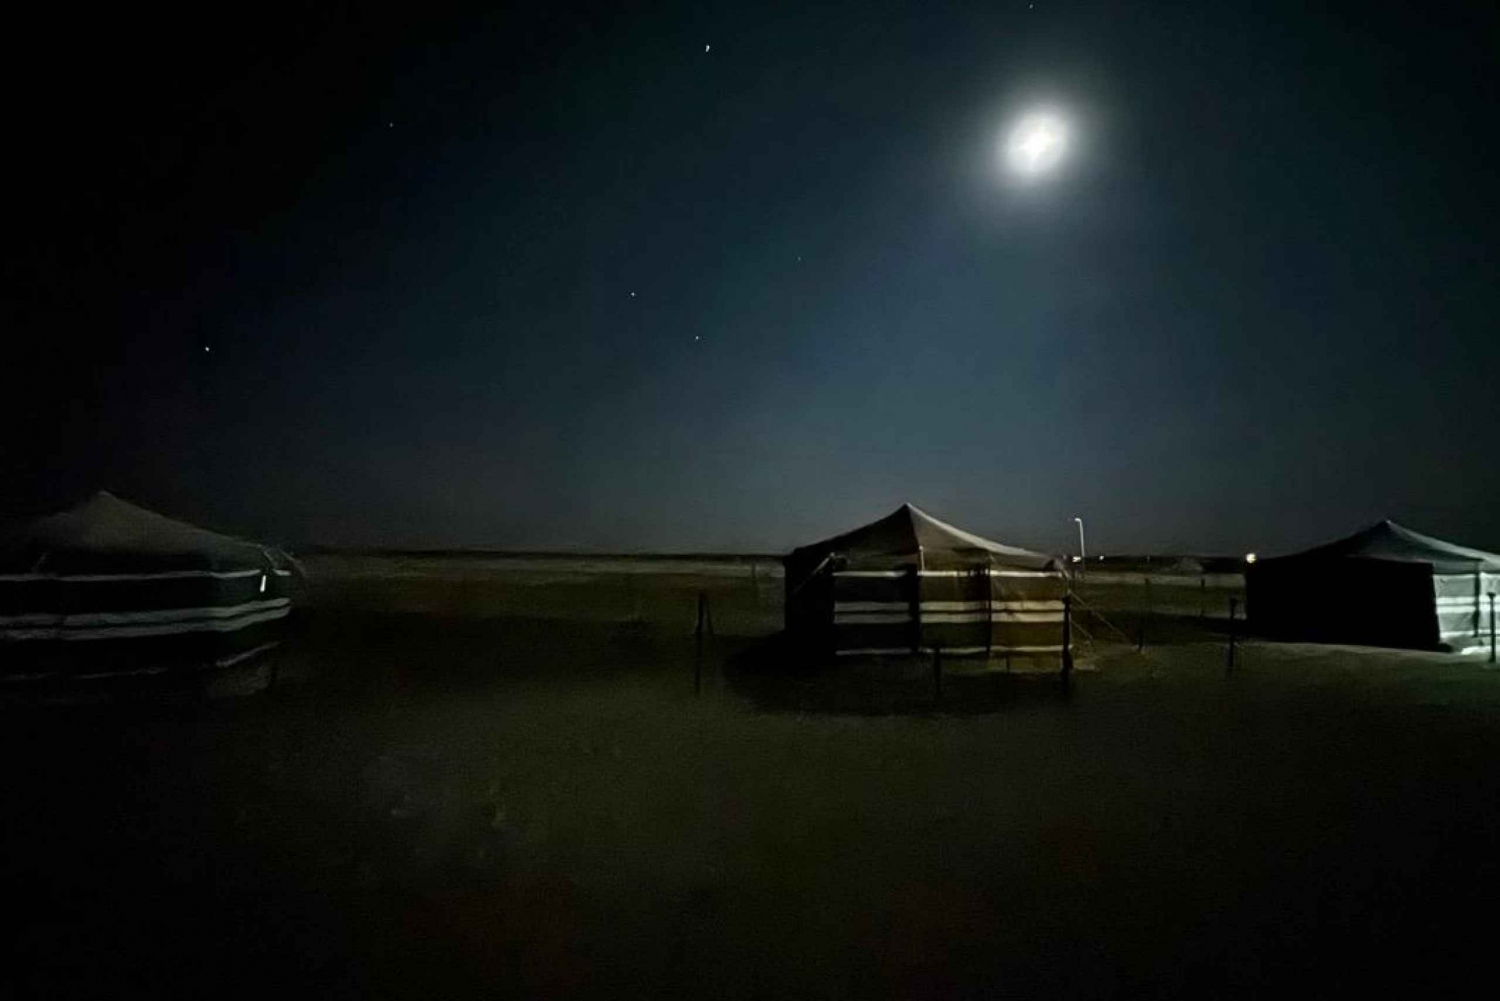 Sterne & Sand: Ein magisches Übernachtungserlebnis in der Wüste